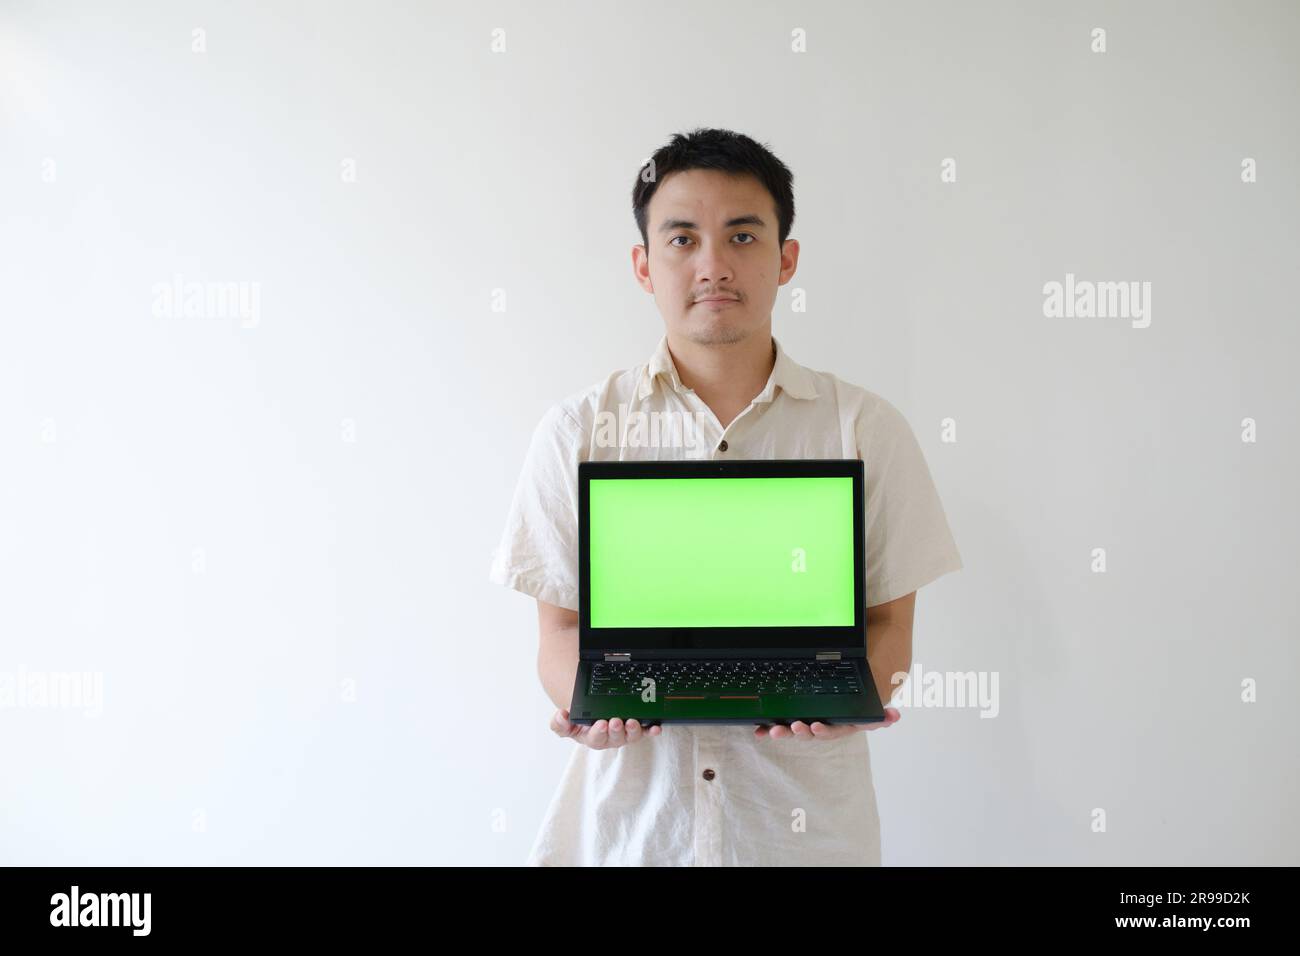 Ein asiatischer Mann mit beigefarbenem Hemd hält einen Laptop mit grünem Bildschirm mit beiden Händen und zeigt ihn der Kamera Stockfoto